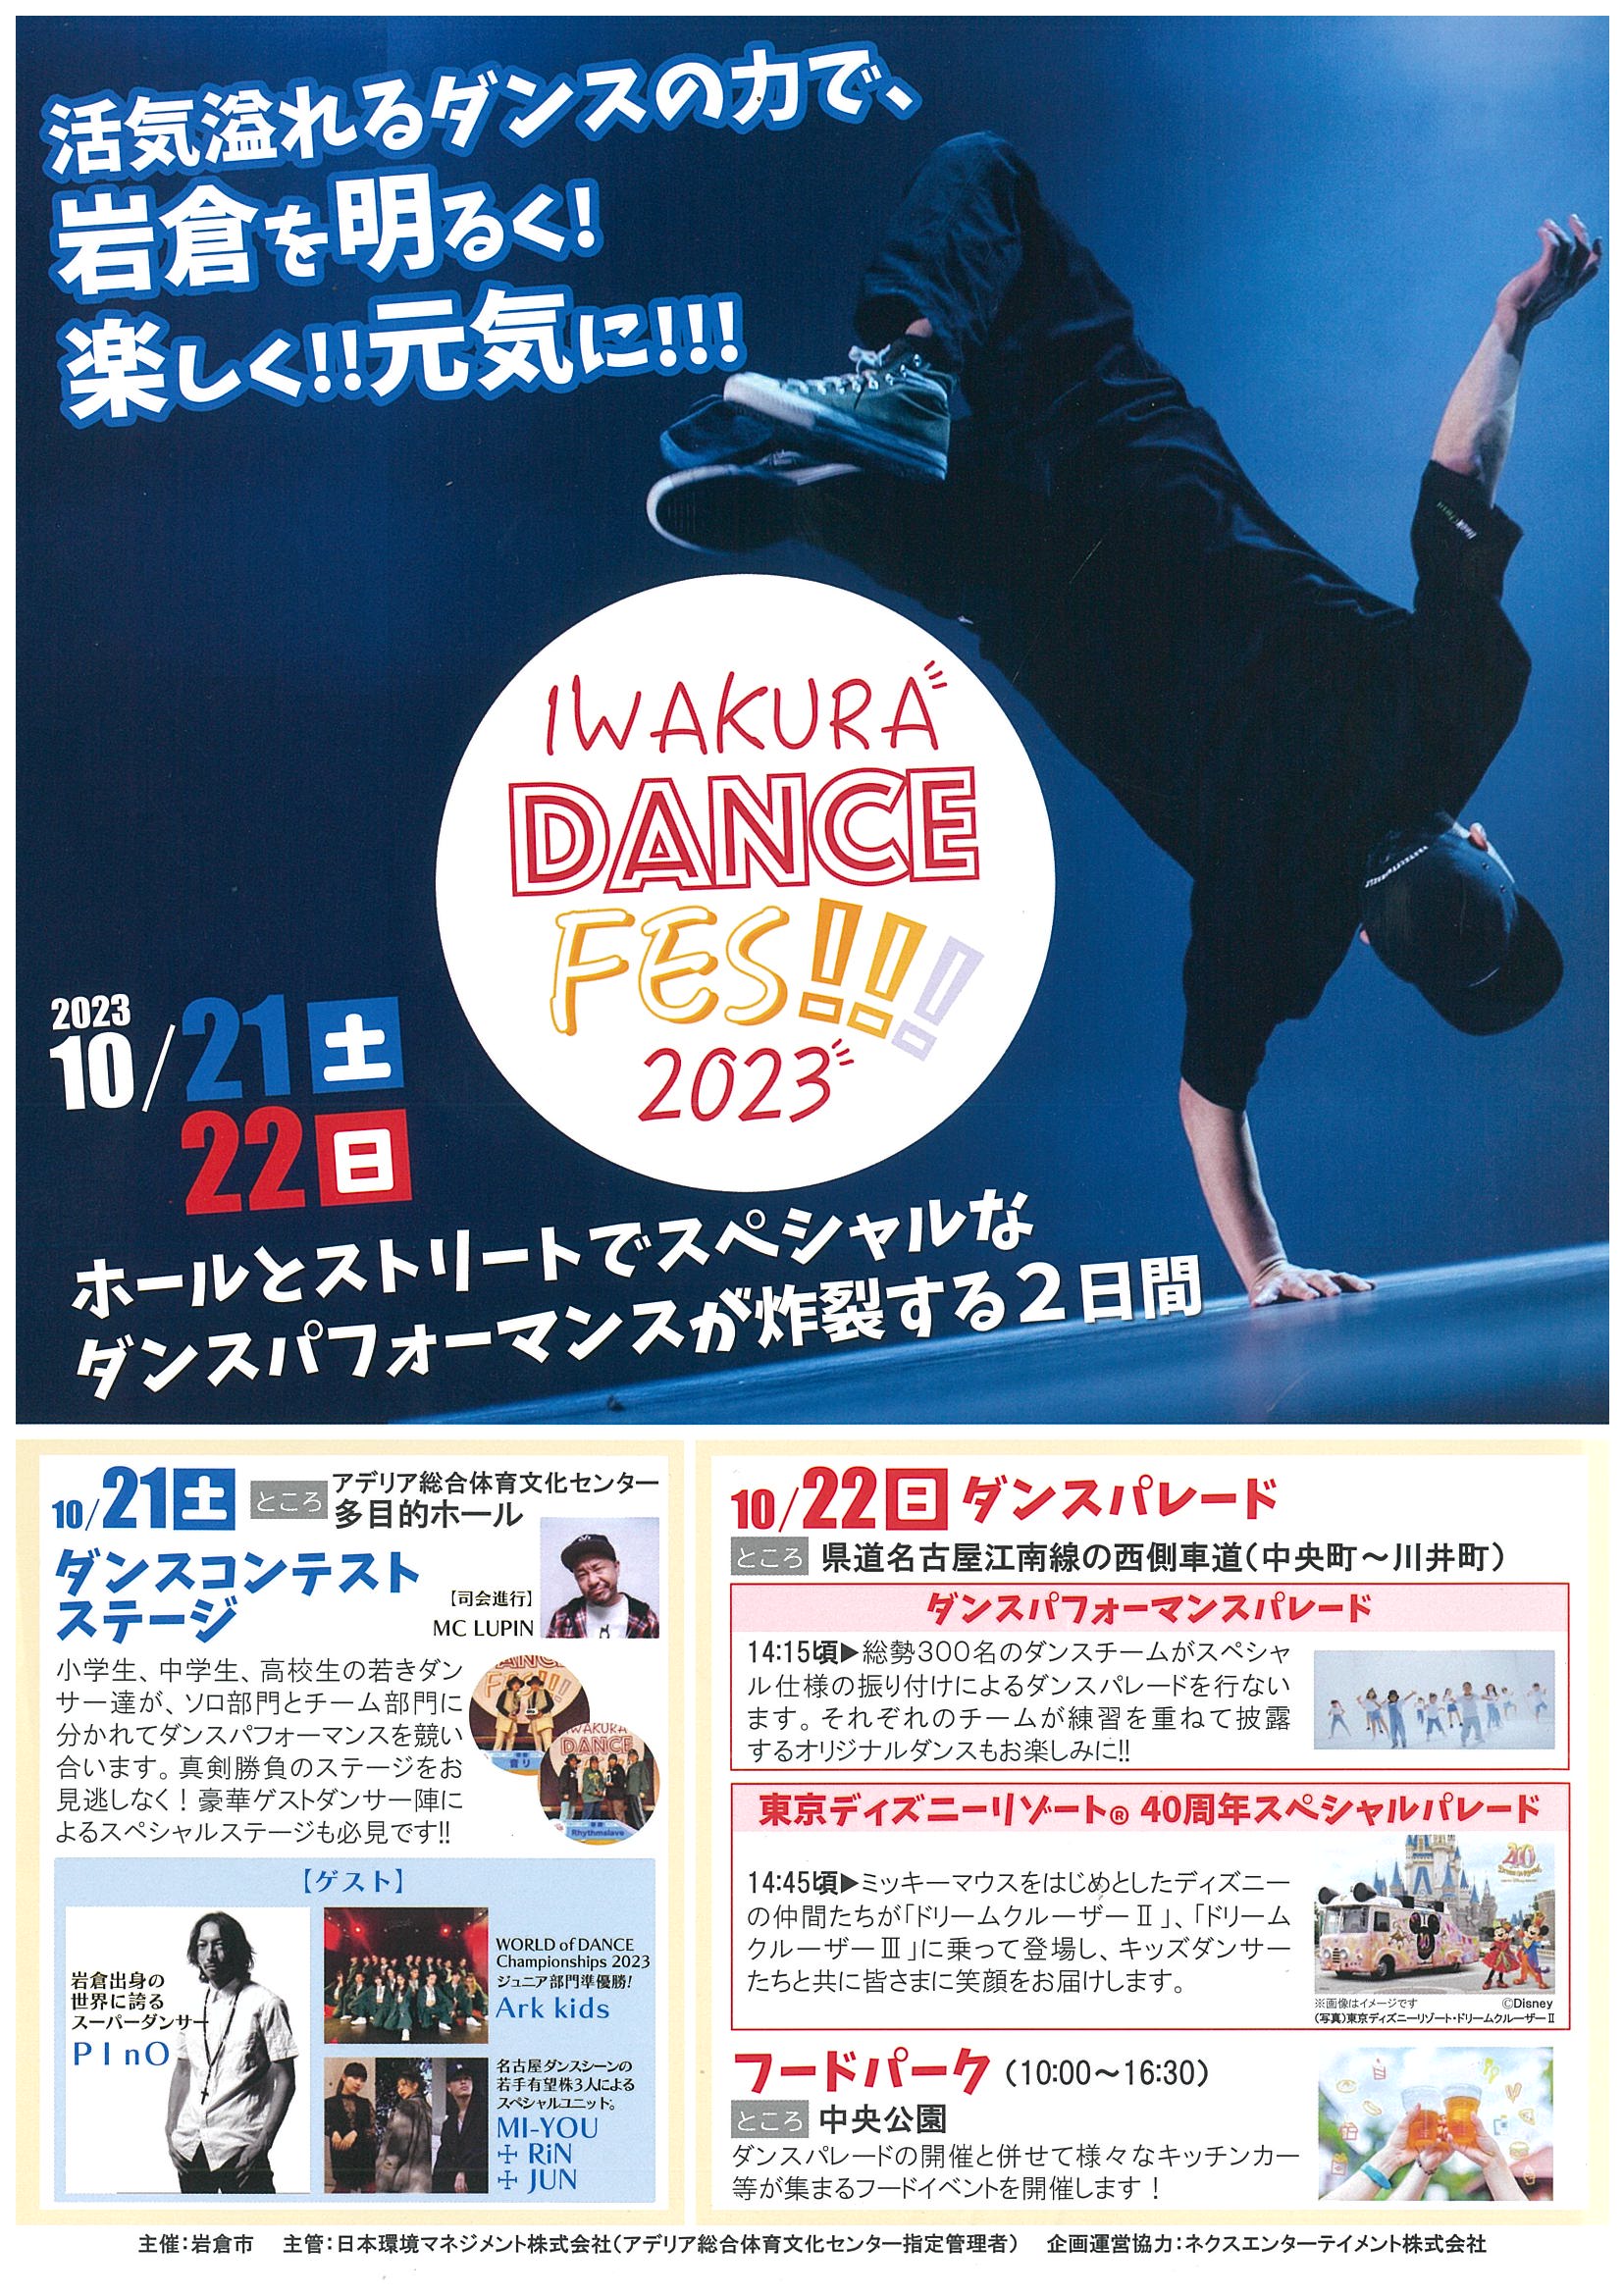 IWAKURA DANCE FES！！！2023